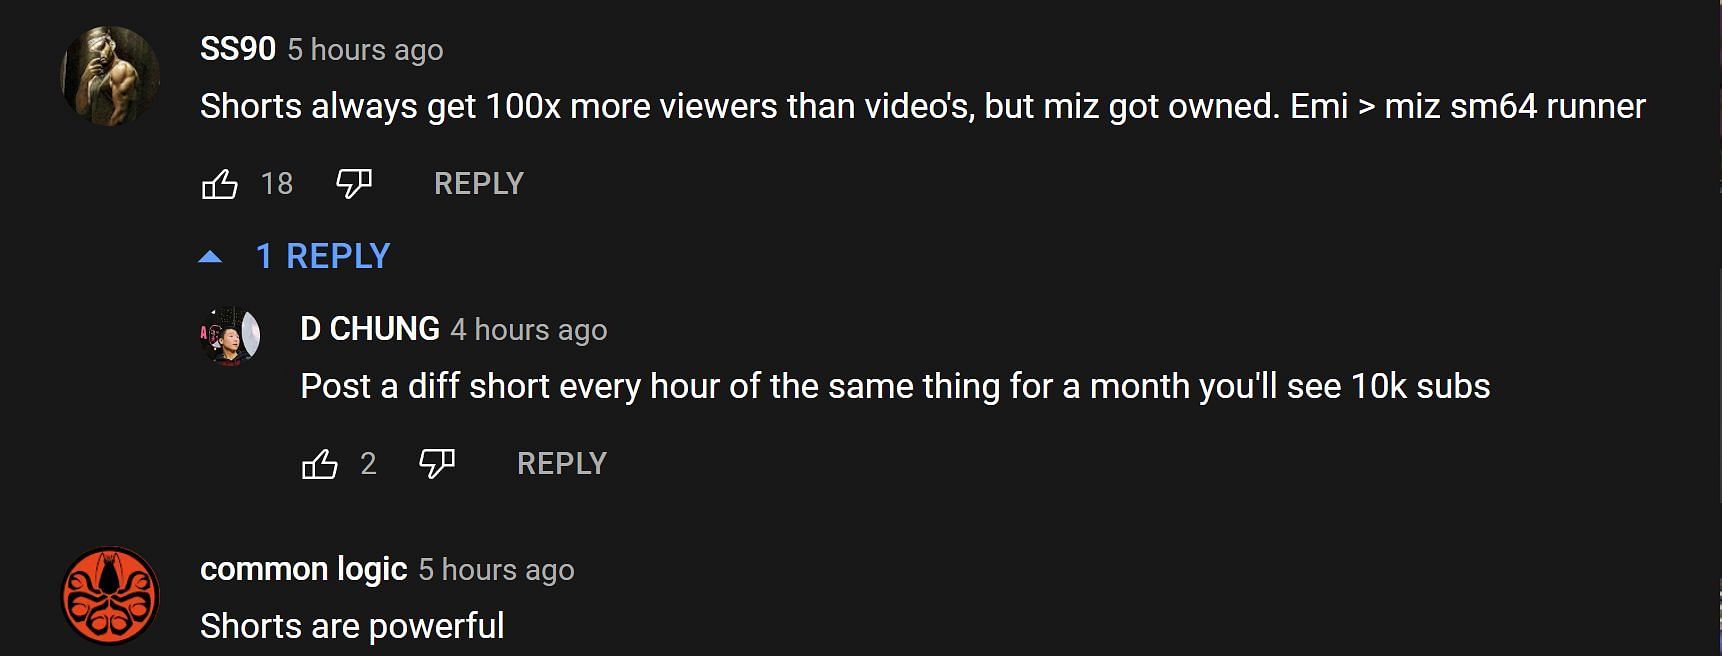 Los fanáticos en la sección de comentarios de YouTube discuten los videos cortos de YouTube (Imagen: Hoy a través de Hoy/YouTube)